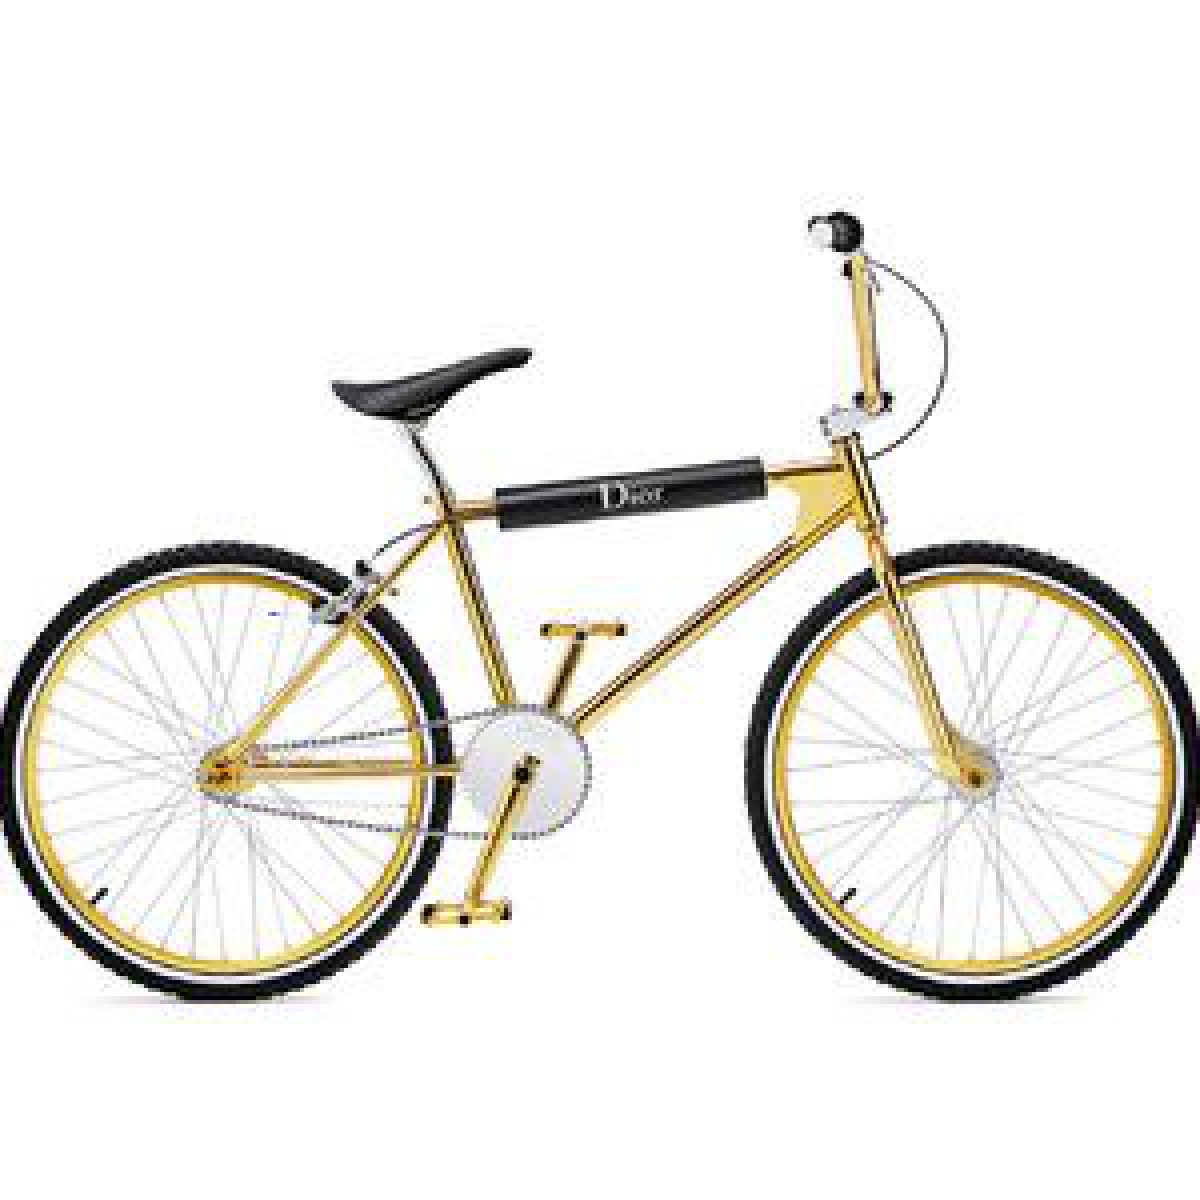 「ディオールオム」ギンザシックス限定アイテムを発売、ゴールドのBMX自転車も